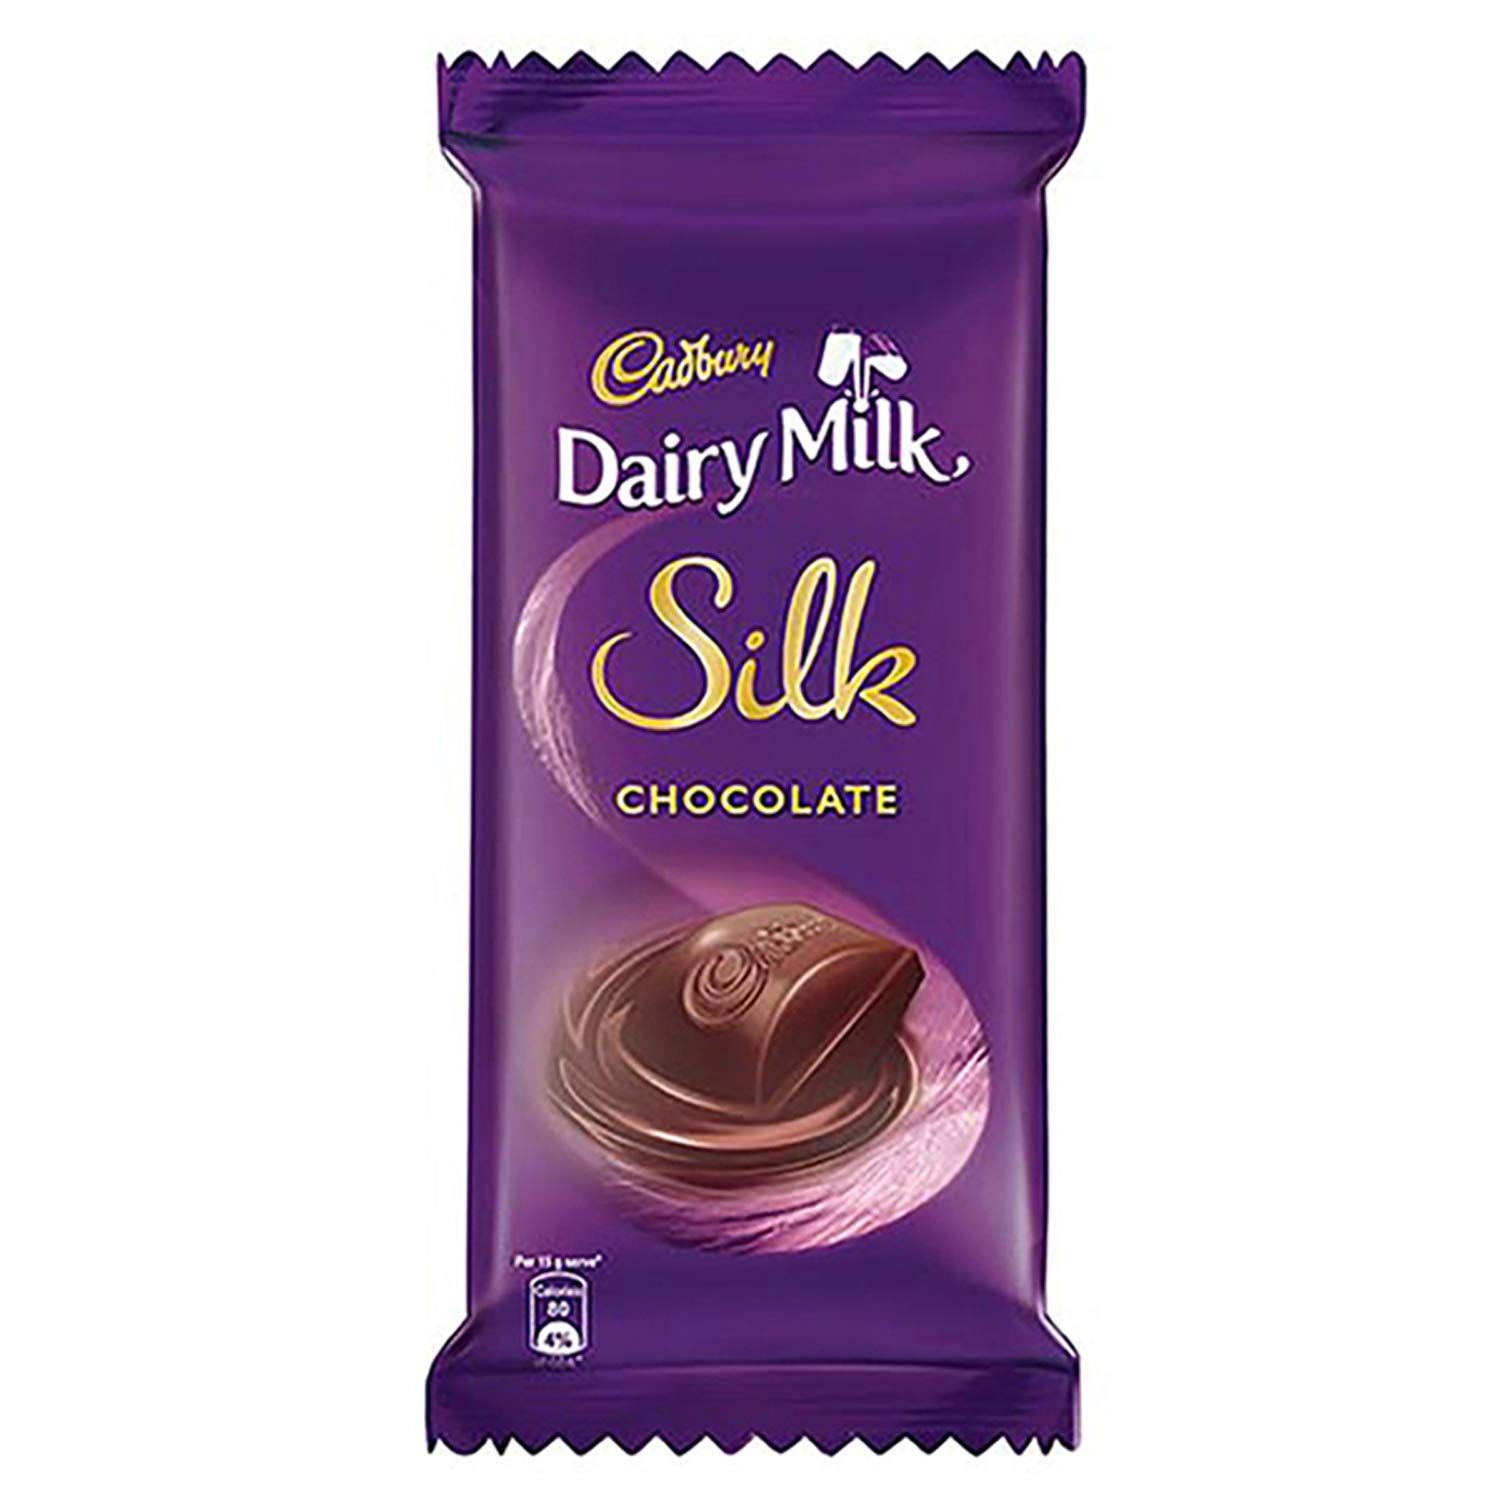 Cadbury Dairy Milk Silk Chocolate Bar Image